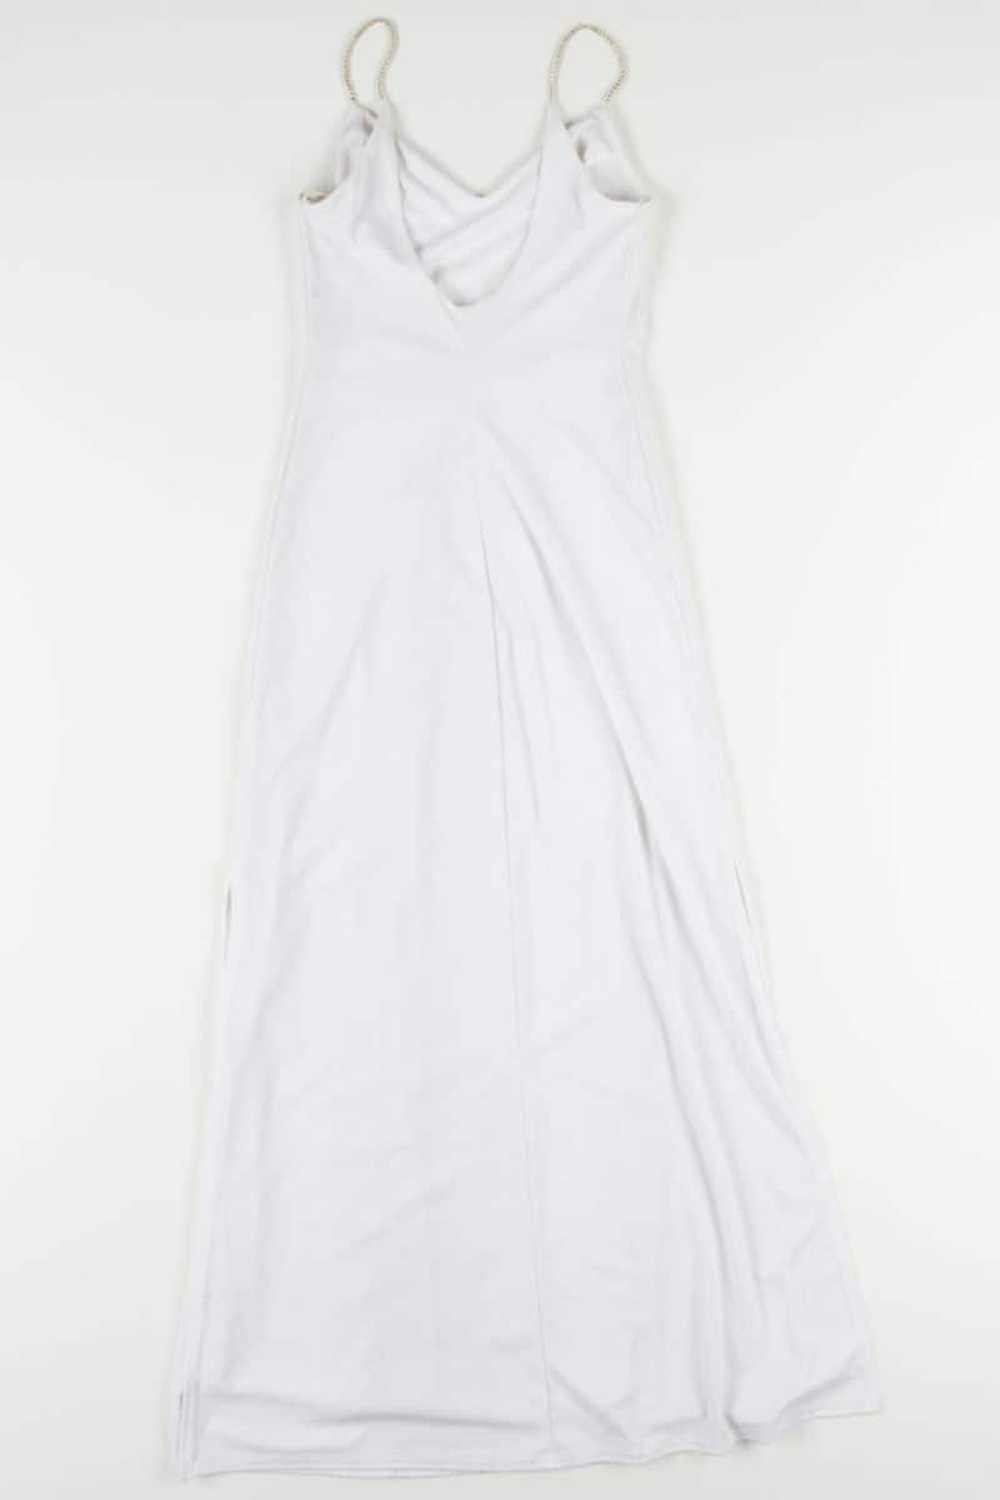 White Gitter Dotted Prom Dress - image 1